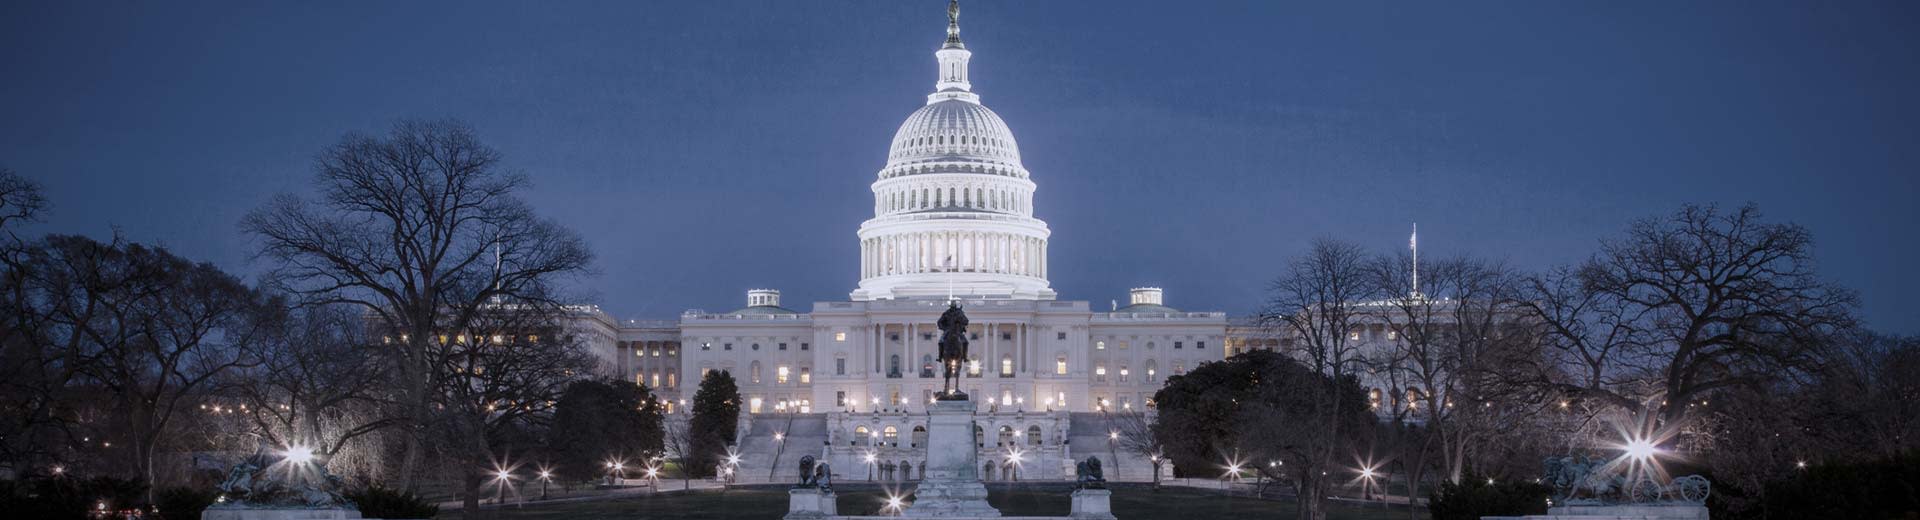 Un ciel bleu marine encadre l'un des monuments les plus célèbres de Washington D.C - le bâtiment du Capitole brille dans l'obscurité.